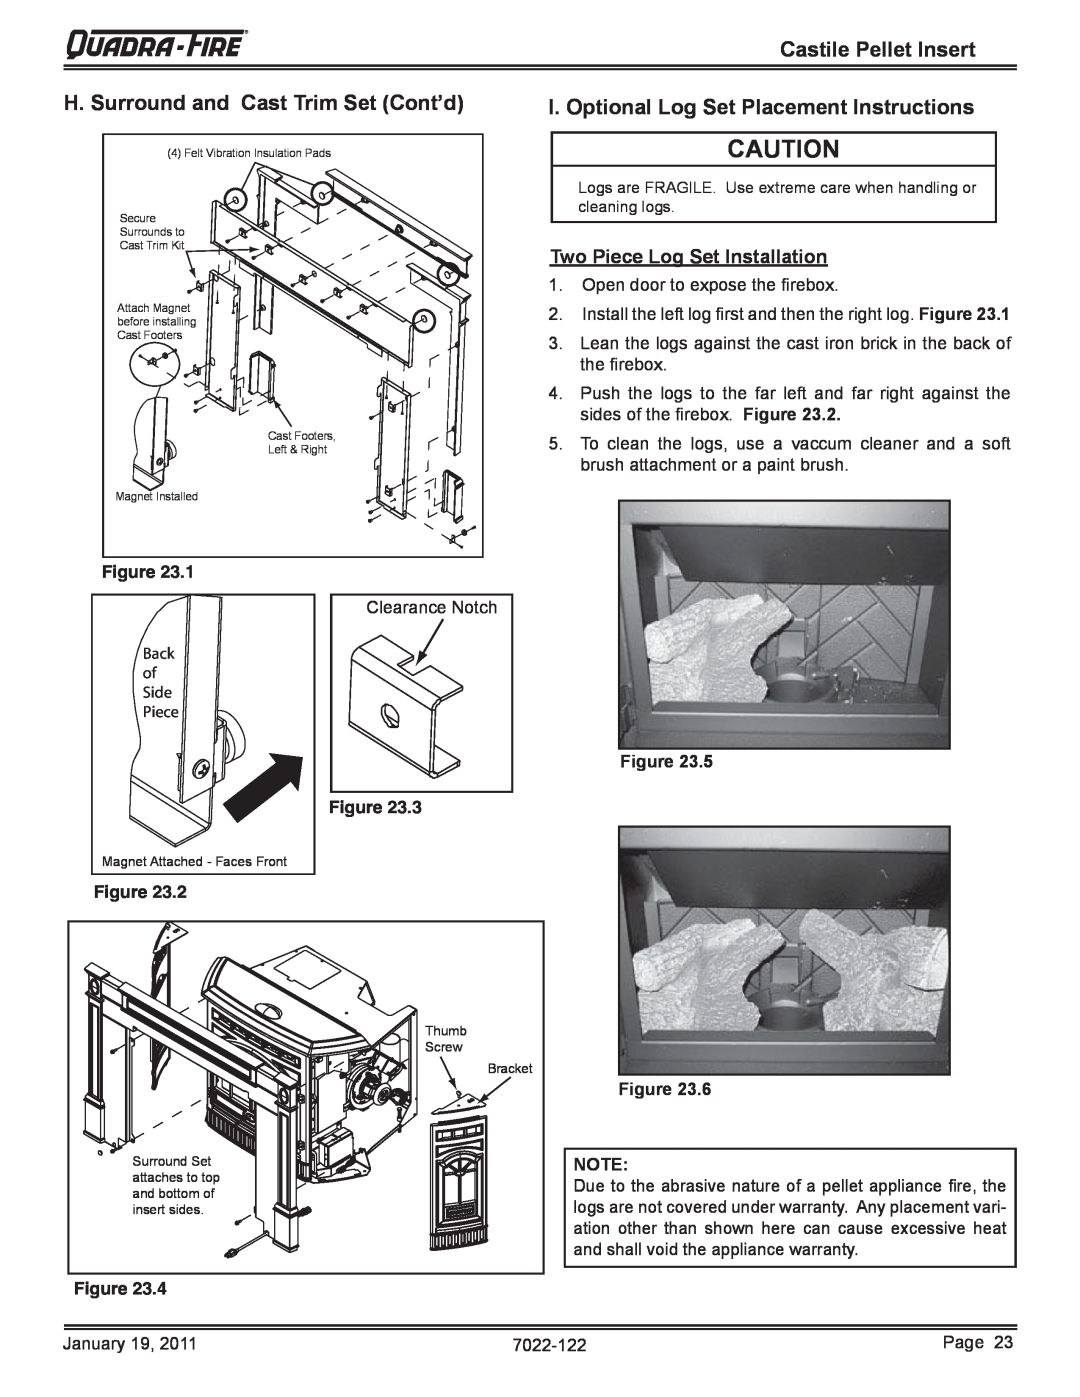 Quadra-Fire CASTILEI-MBK H. Surround and Cast Trim Set Cont’d, I. Optional Log Set Placement Instructions, Figure 